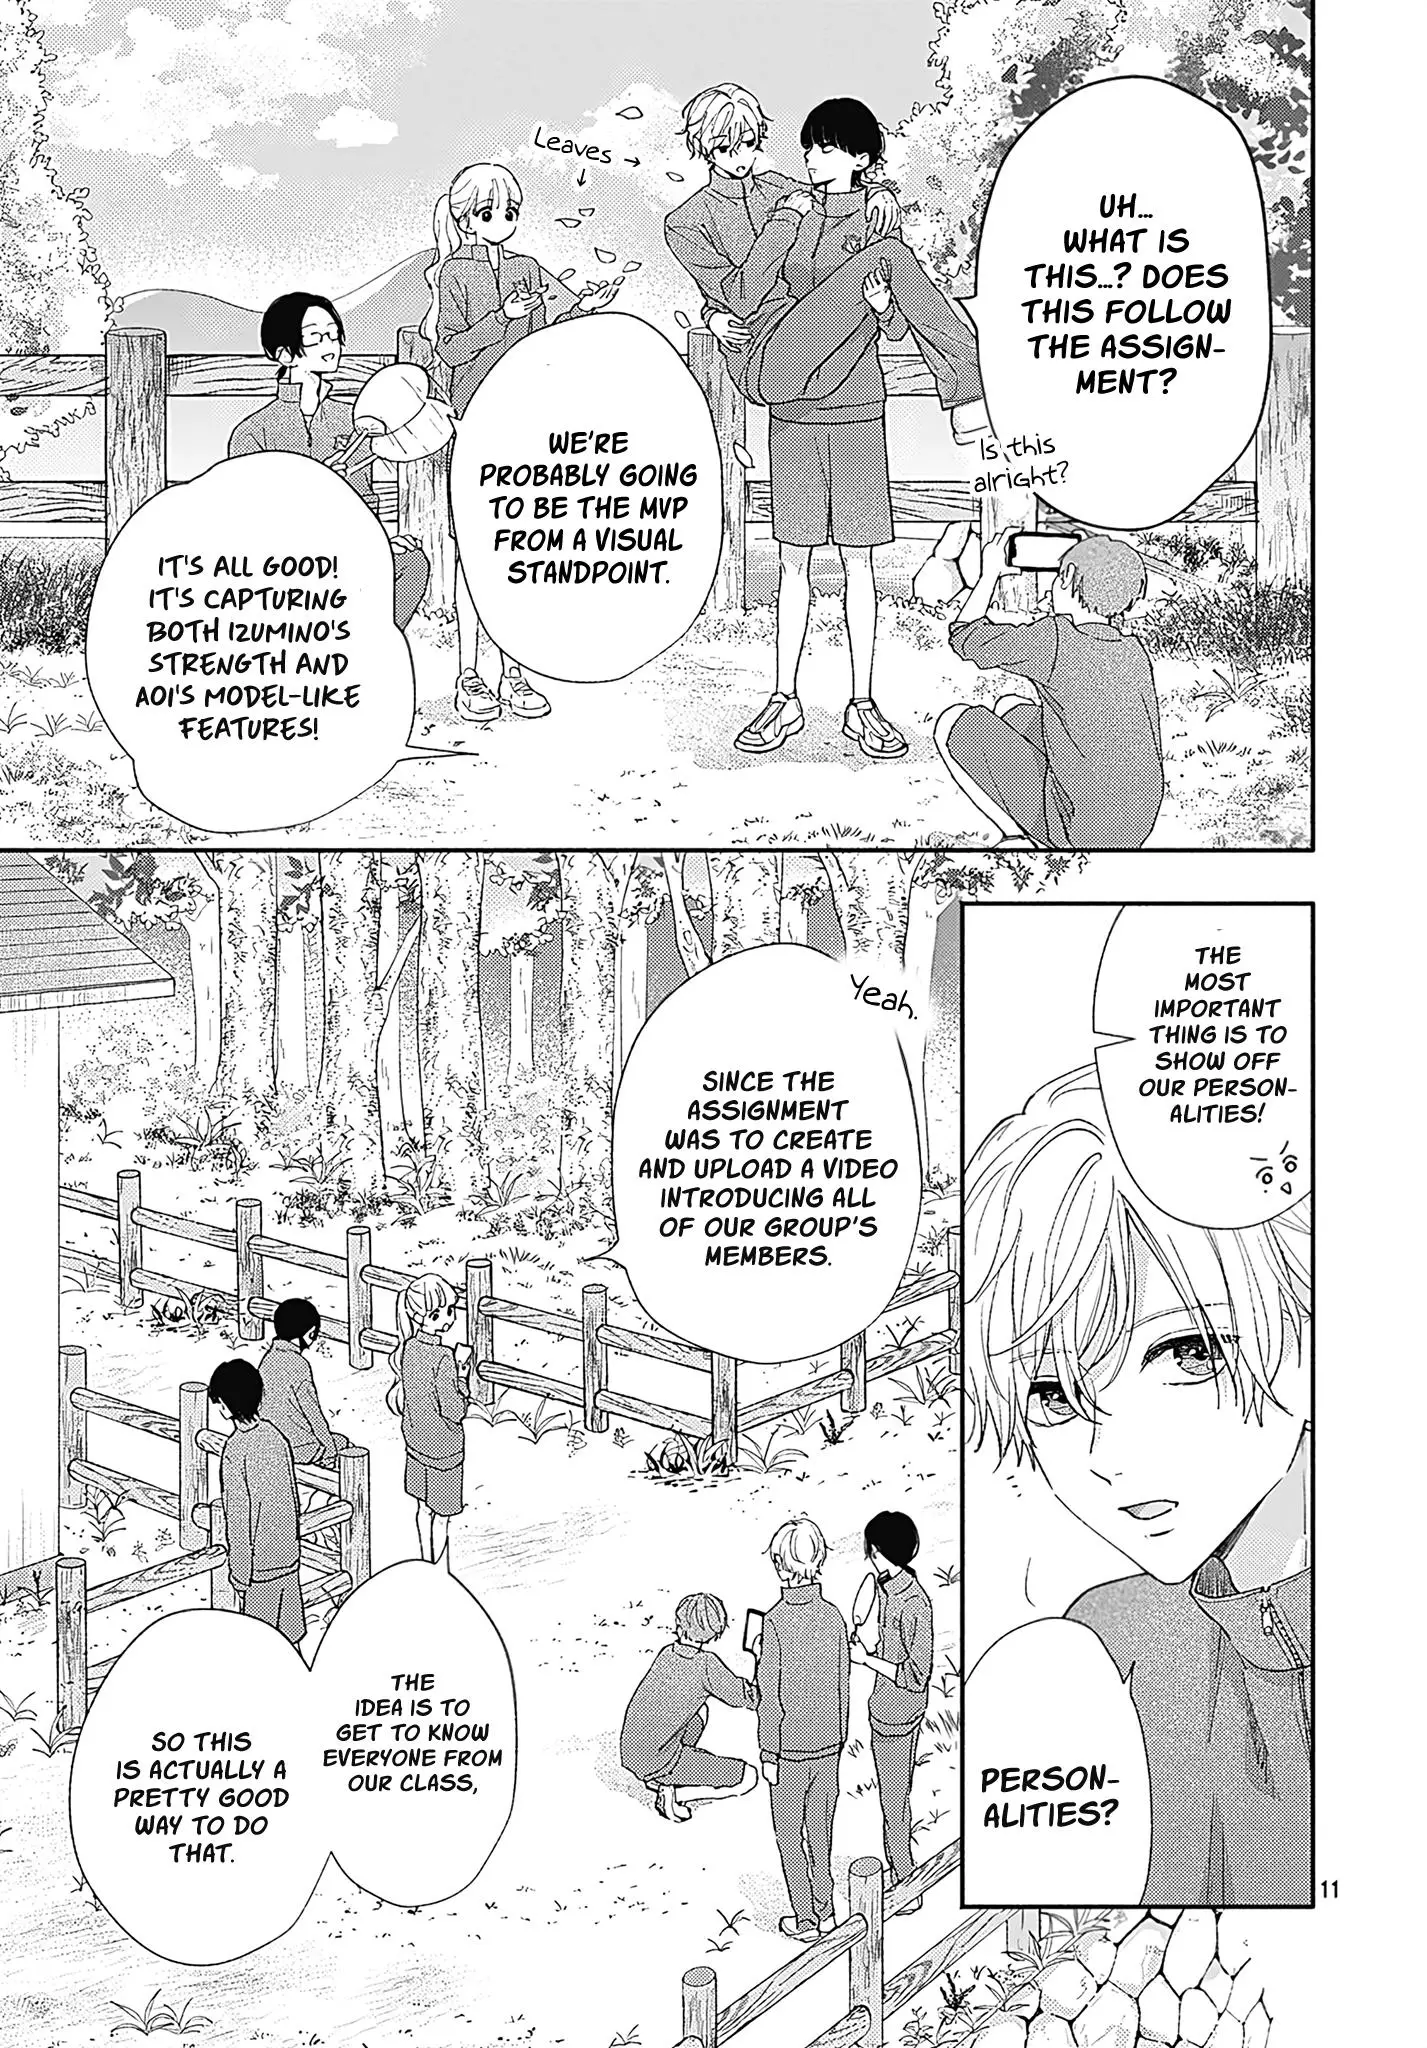 I Hate Komiyama - 4 page 11-95e6c739